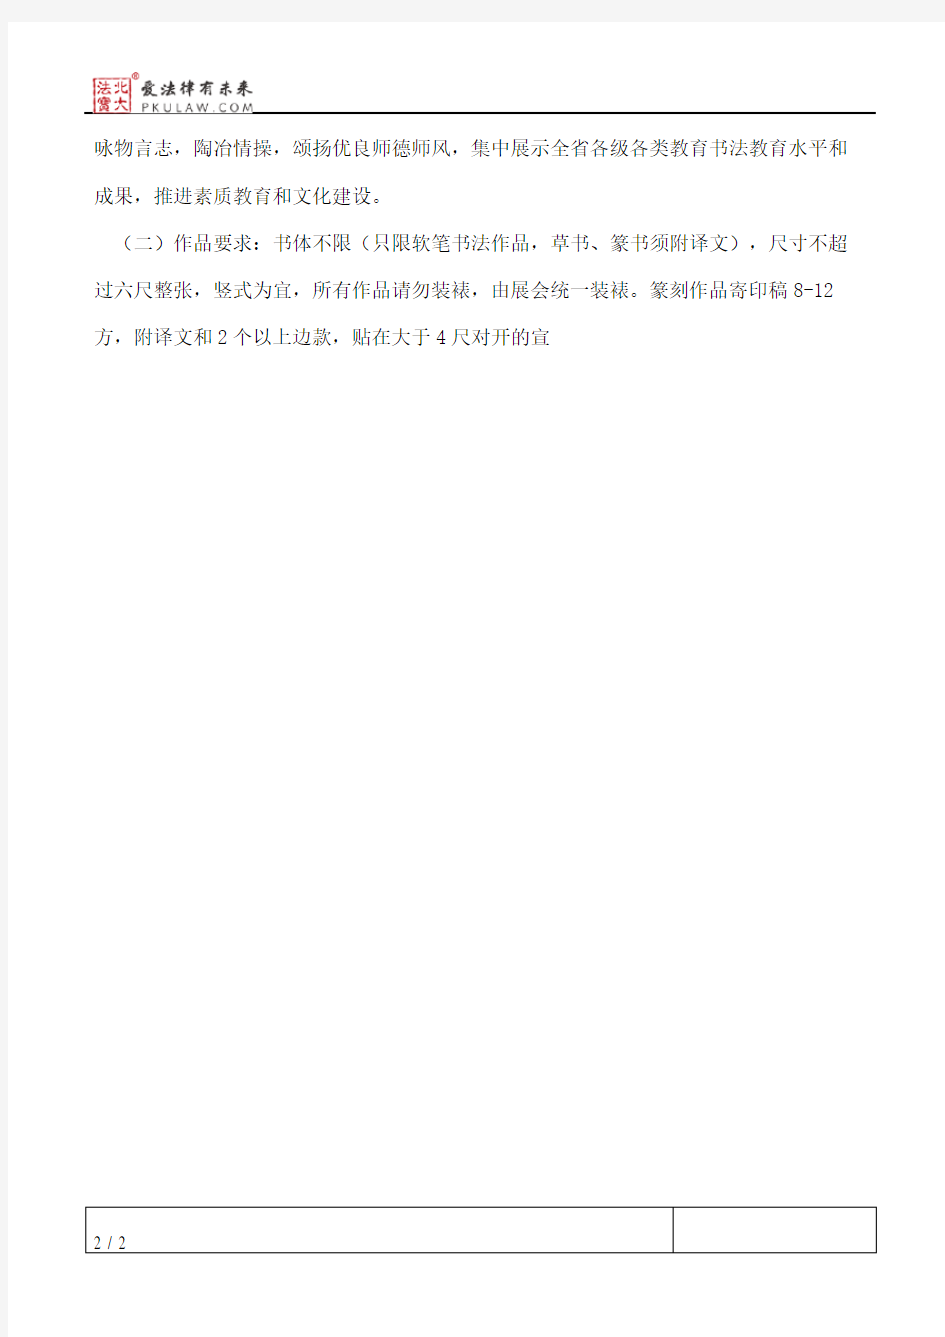 江苏省教育书法家协会关于举办江苏省教育书法家协会会员作品展的通知